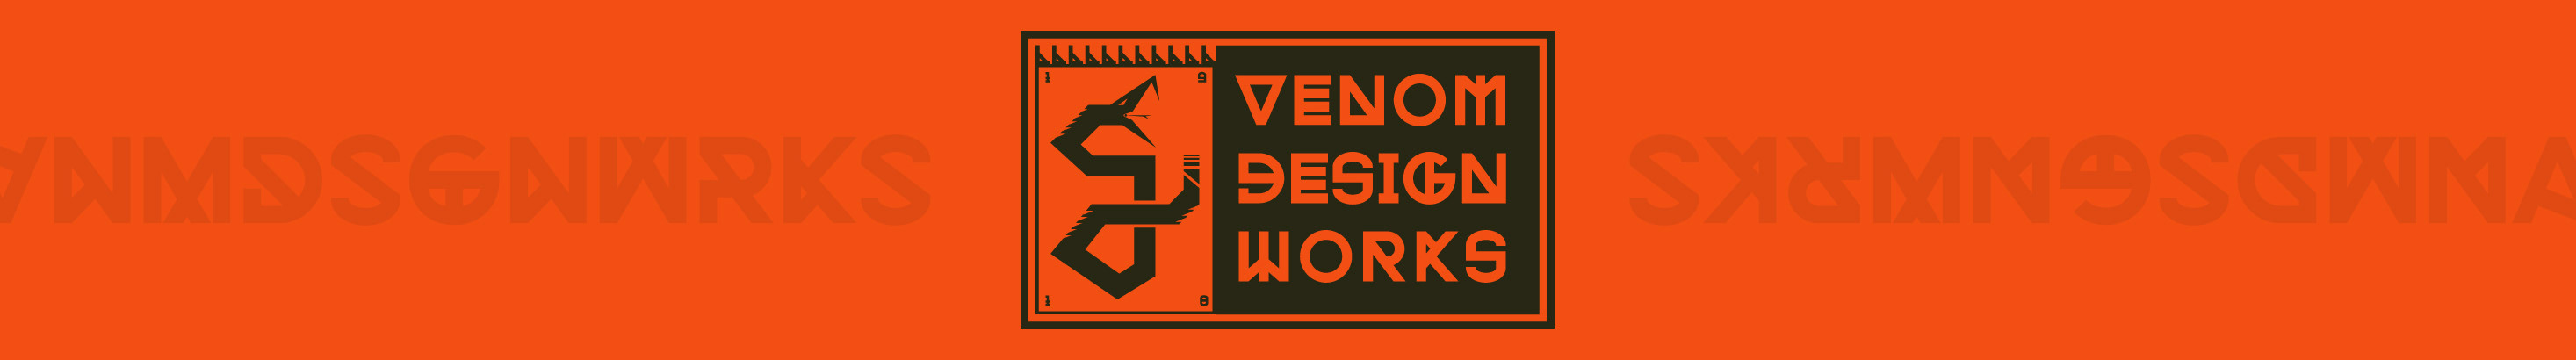 Venom Design Works - 的個人檔案橫幅